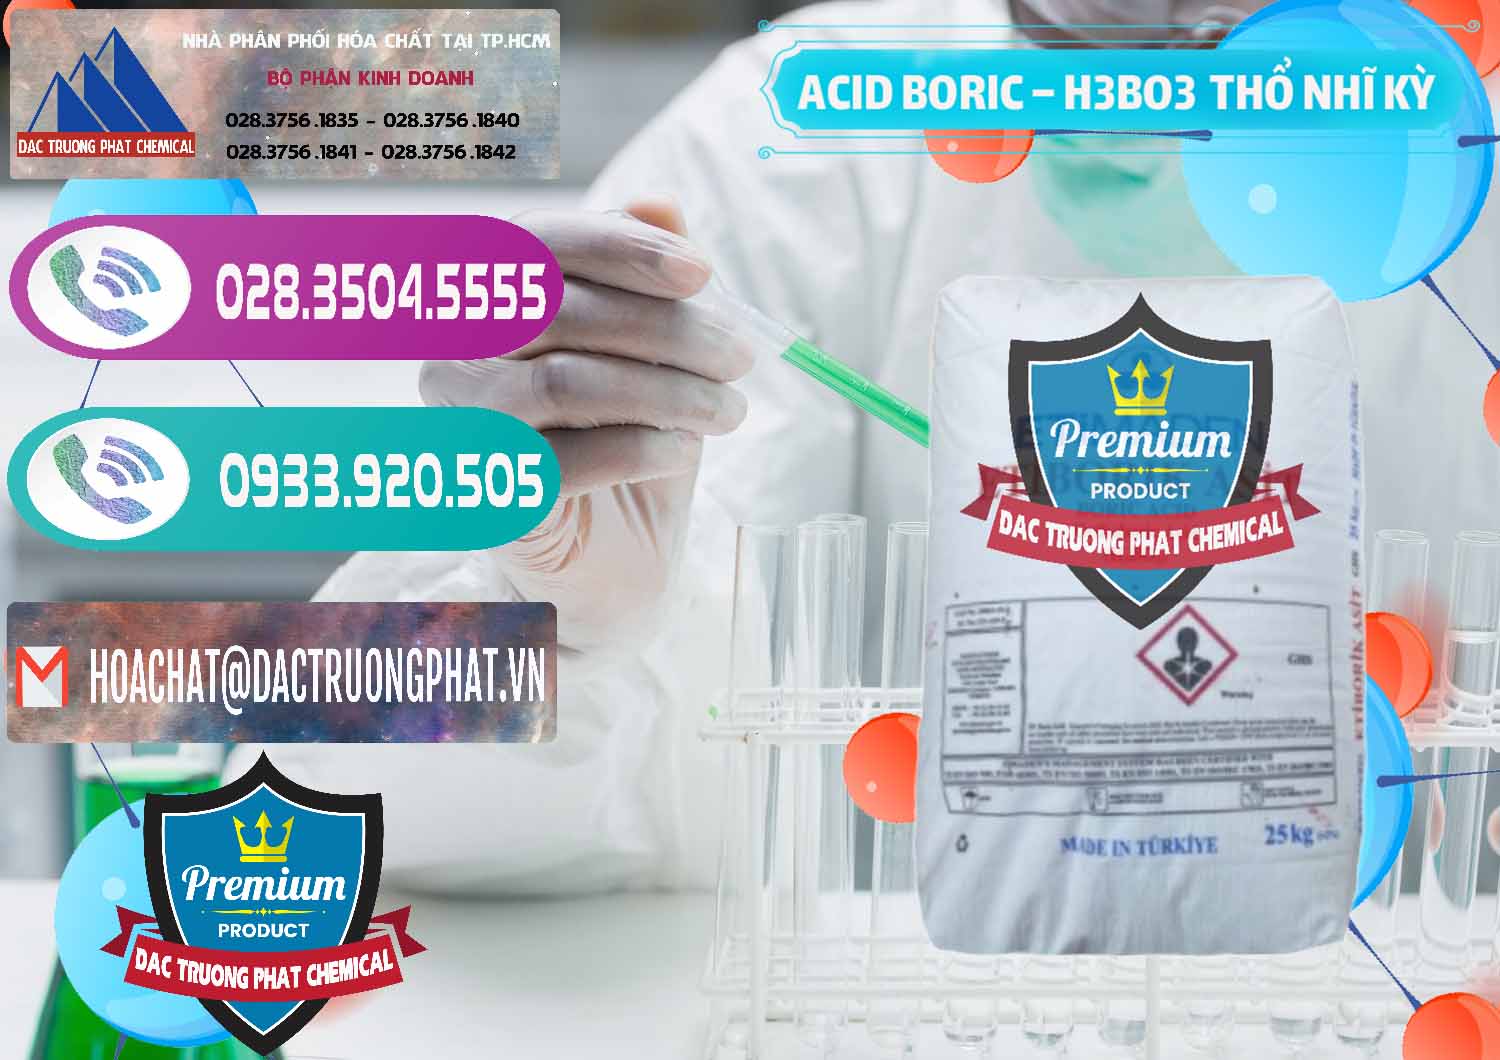 Cty chuyên bán ( cung cấp ) Acid Boric – Axit Boric H3BO3 Etimaden Thổ Nhĩ Kỳ Turkey - 0369 - Đơn vị chuyên kinh doanh - cung cấp hóa chất tại TP.HCM - hoachatxulynuoc.com